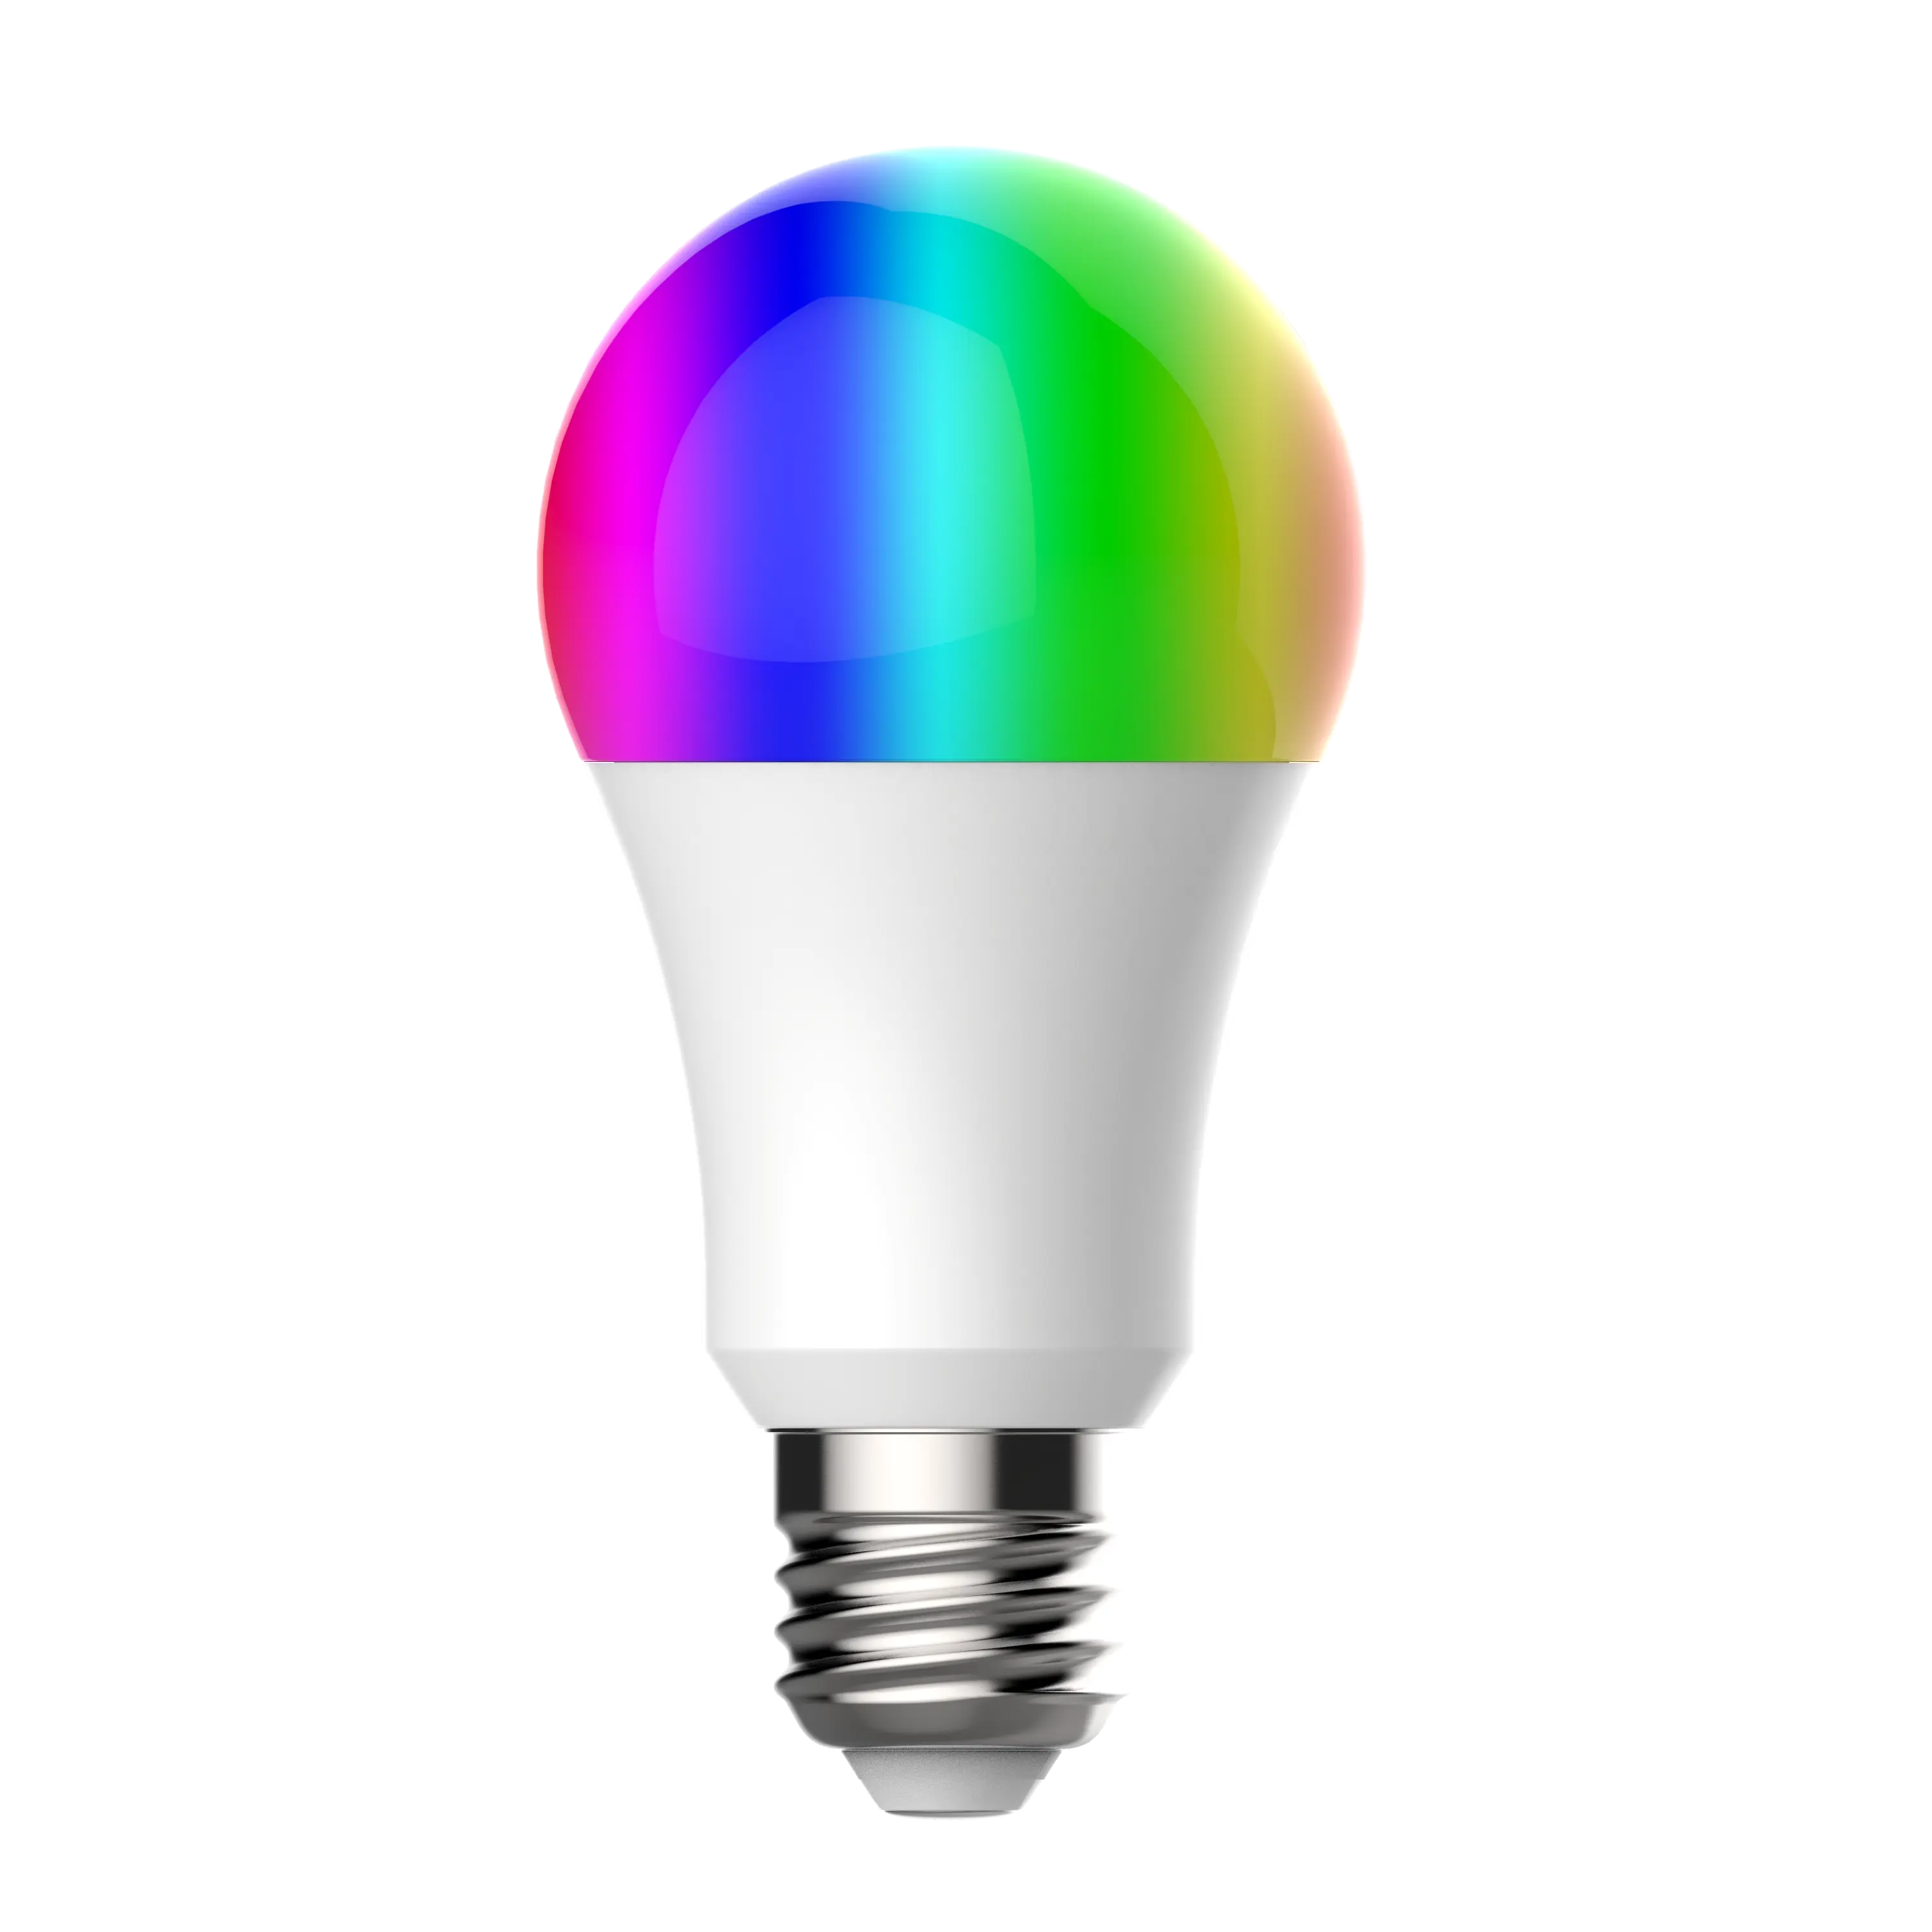 Magic — ampoule intelligente Wifi LED rgbw 9W, couleur changeante, Compatible avec Alexa Google Home Assistant, E26 9W, éclairage variable